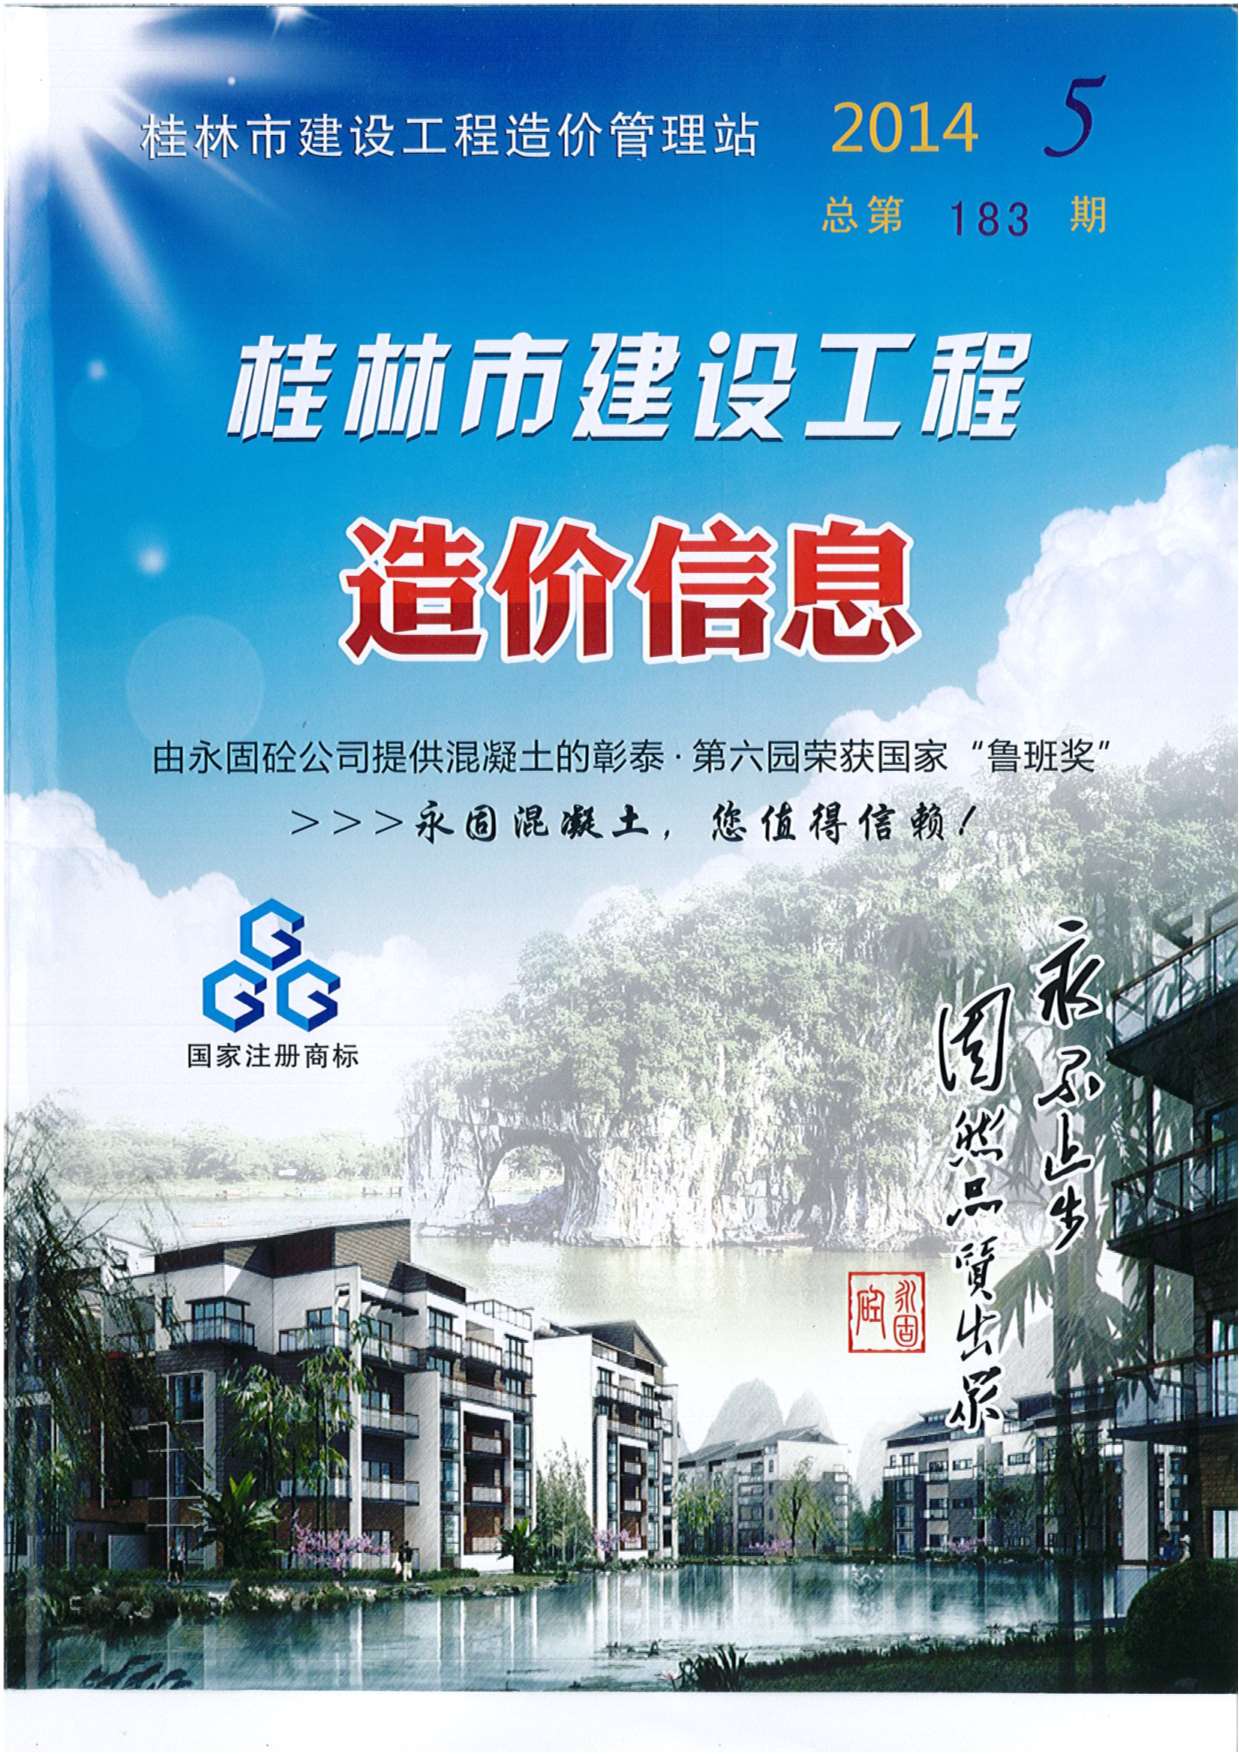 桂林市2014年5月建设工程造价信息造价库信息价